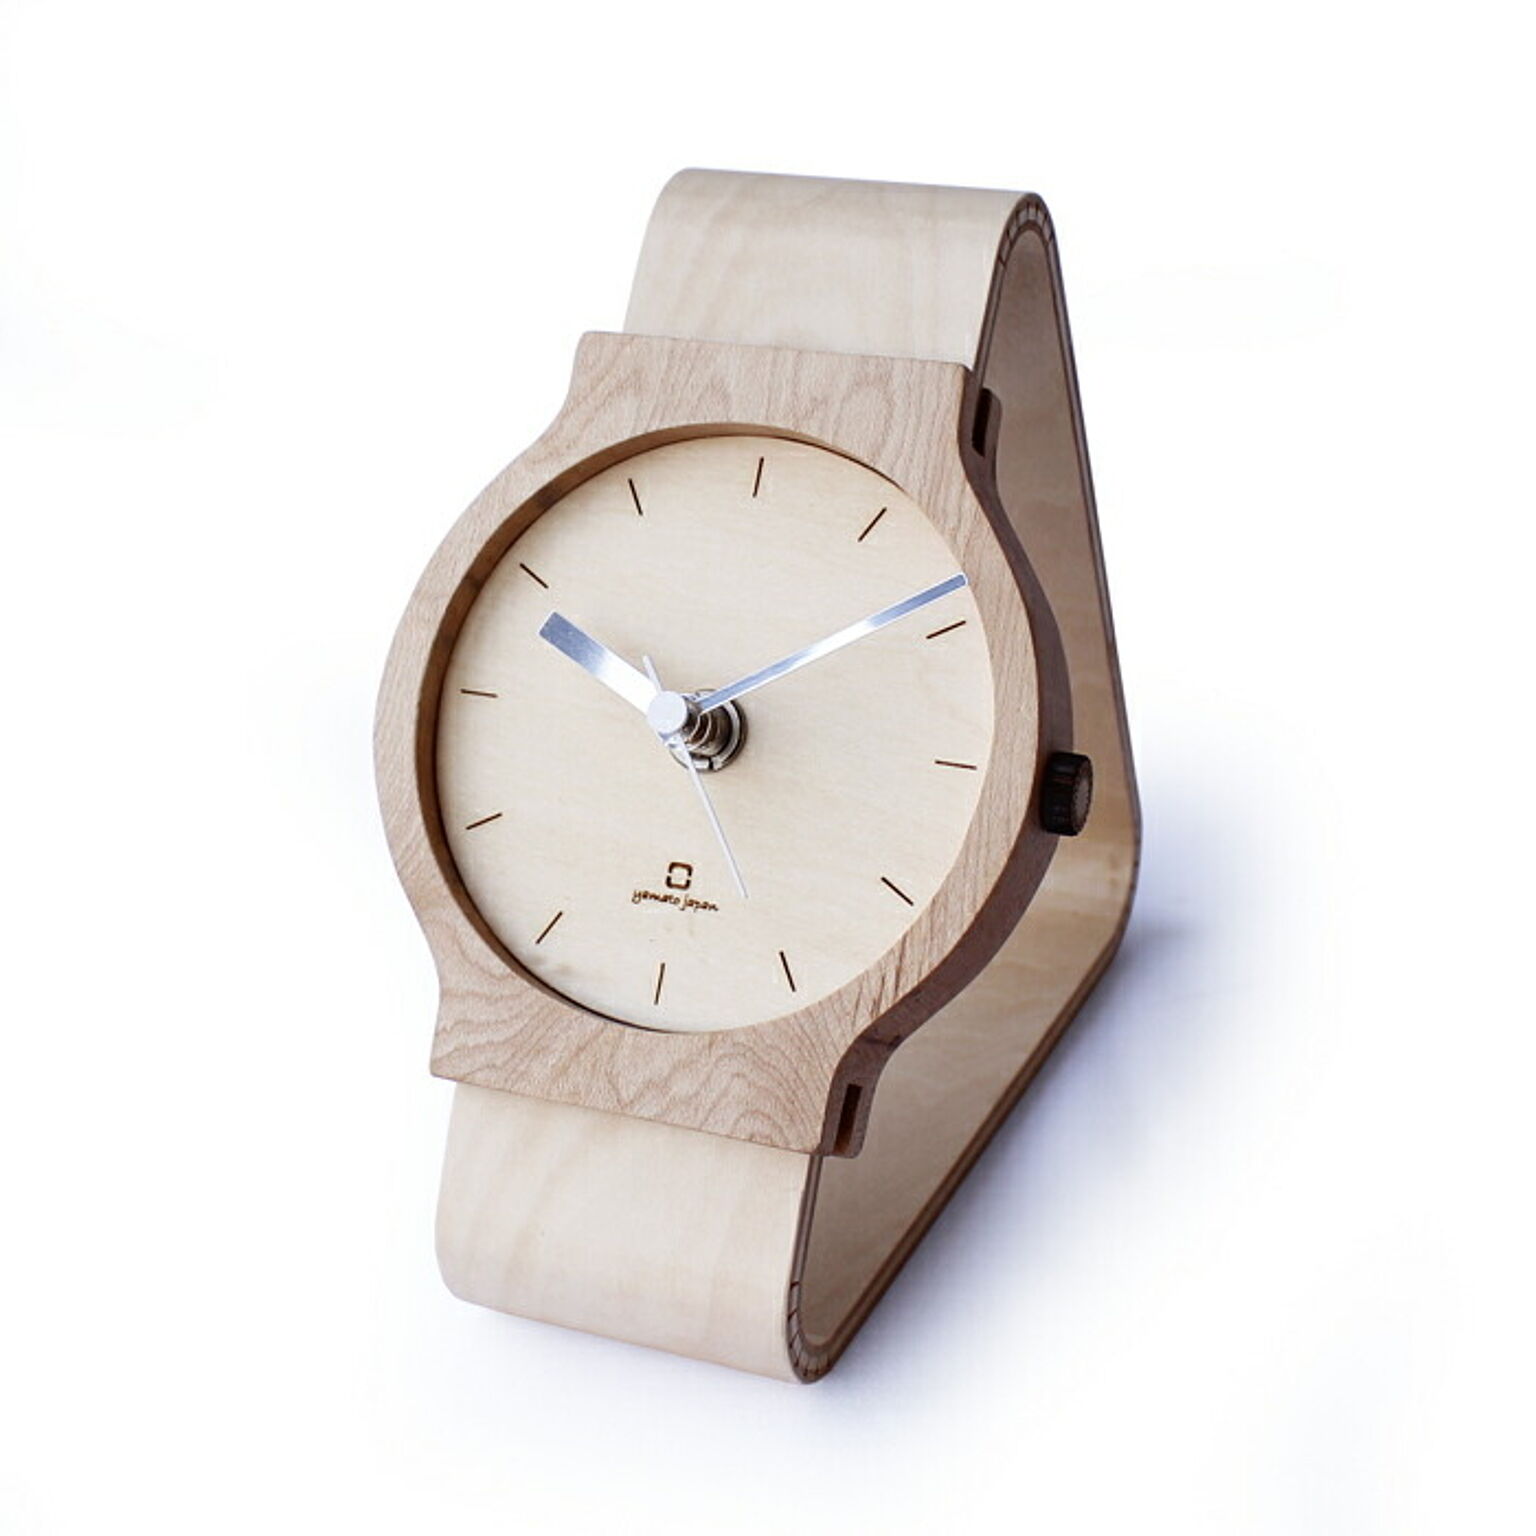 時計 置き時計 北欧 シンプル 腕時計 モダン ユニーク Watches clock 木製 日本製 職人の手作り リビング ヤマト工芸